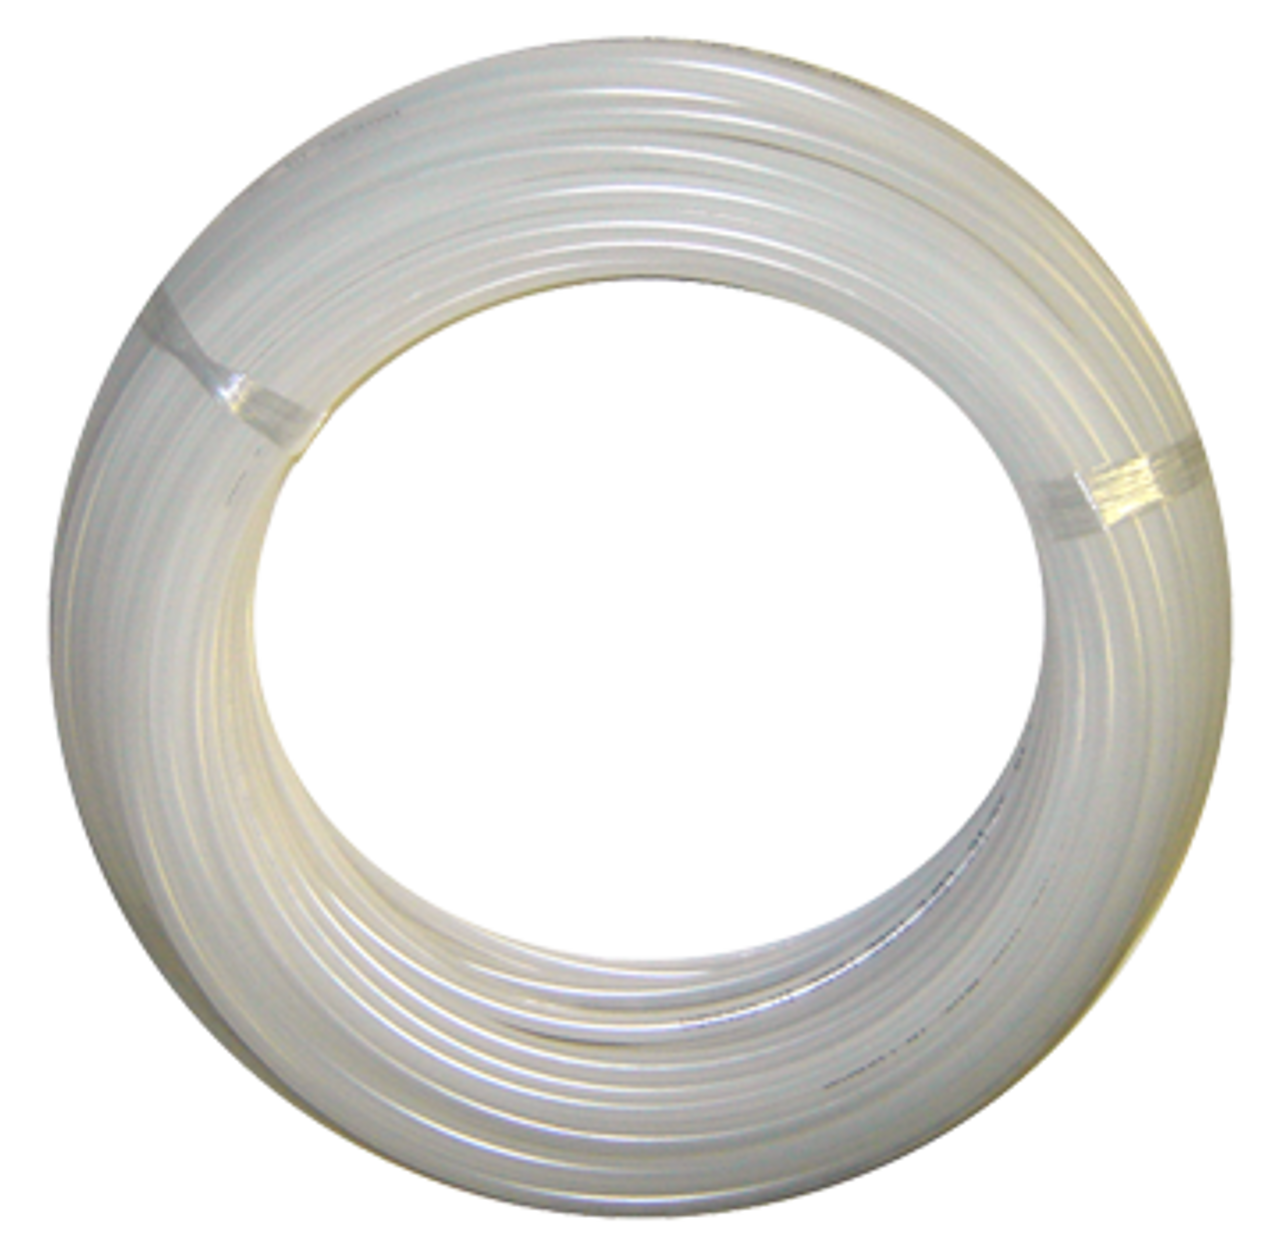 5/32" x 100' Flexible Natural Nylon Tube Type 11  485-2-1/2-100